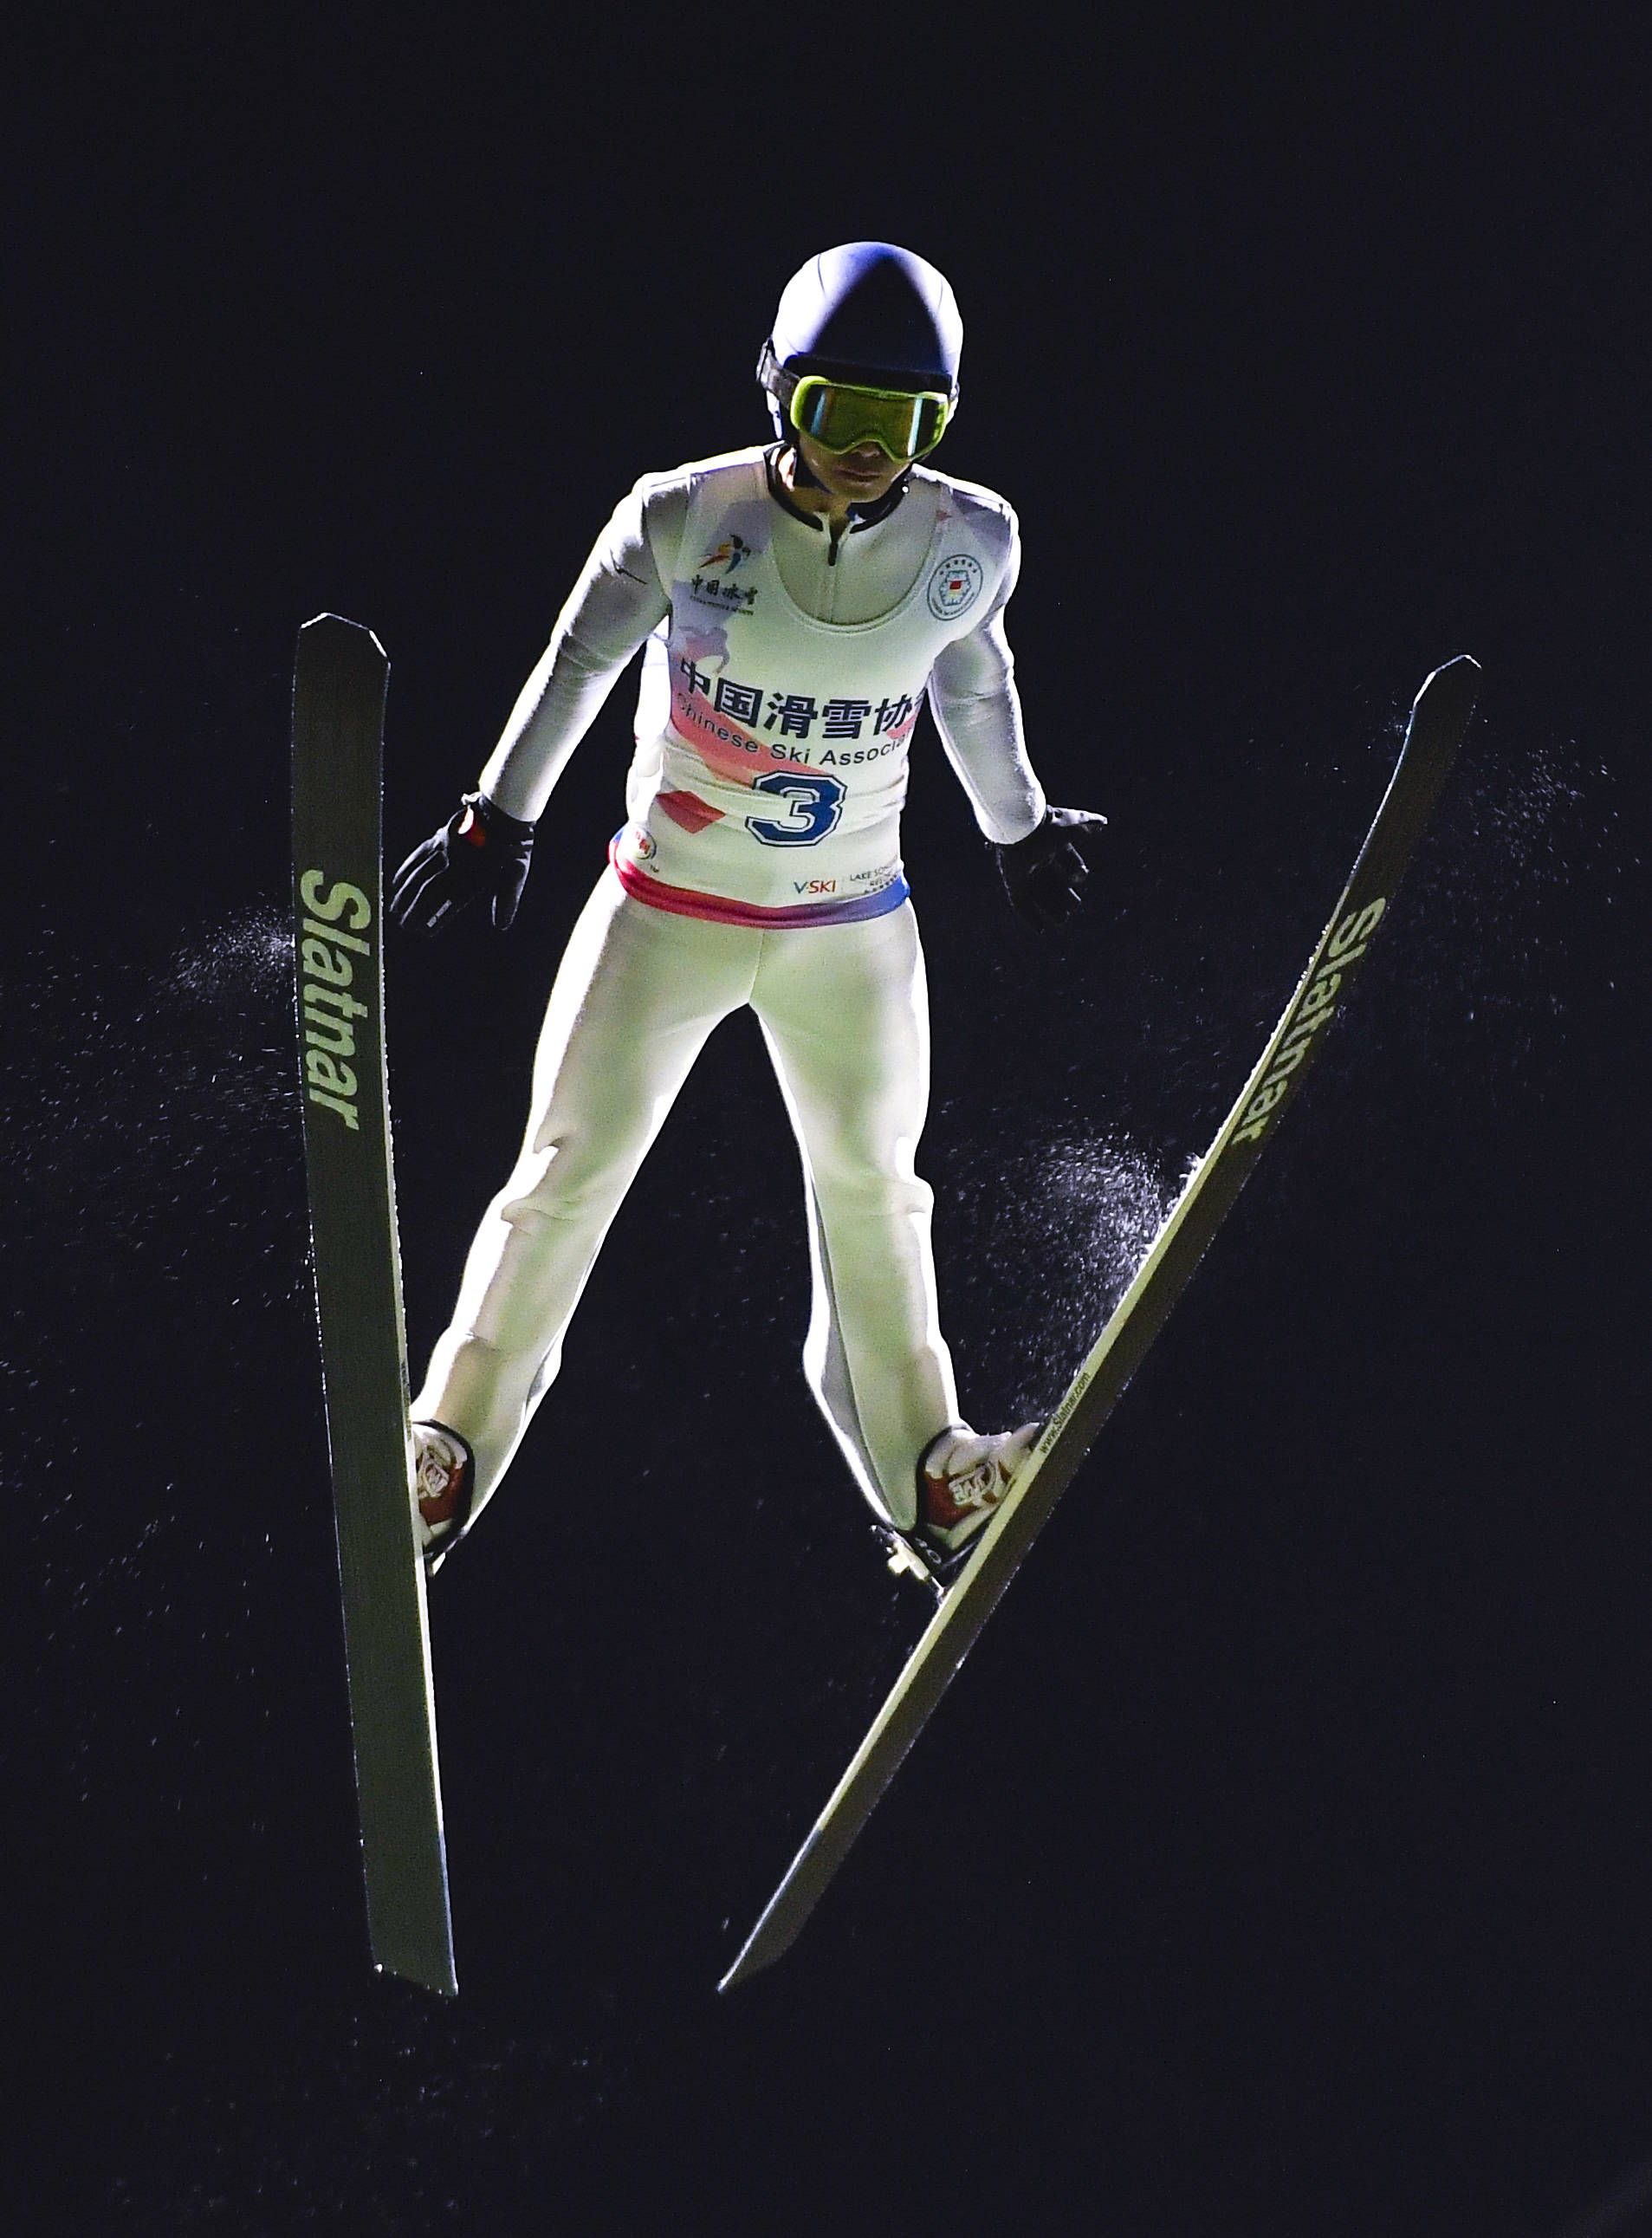 跳台滑雪——跳台滑草奥运积分模拟赛:男子个人标准台